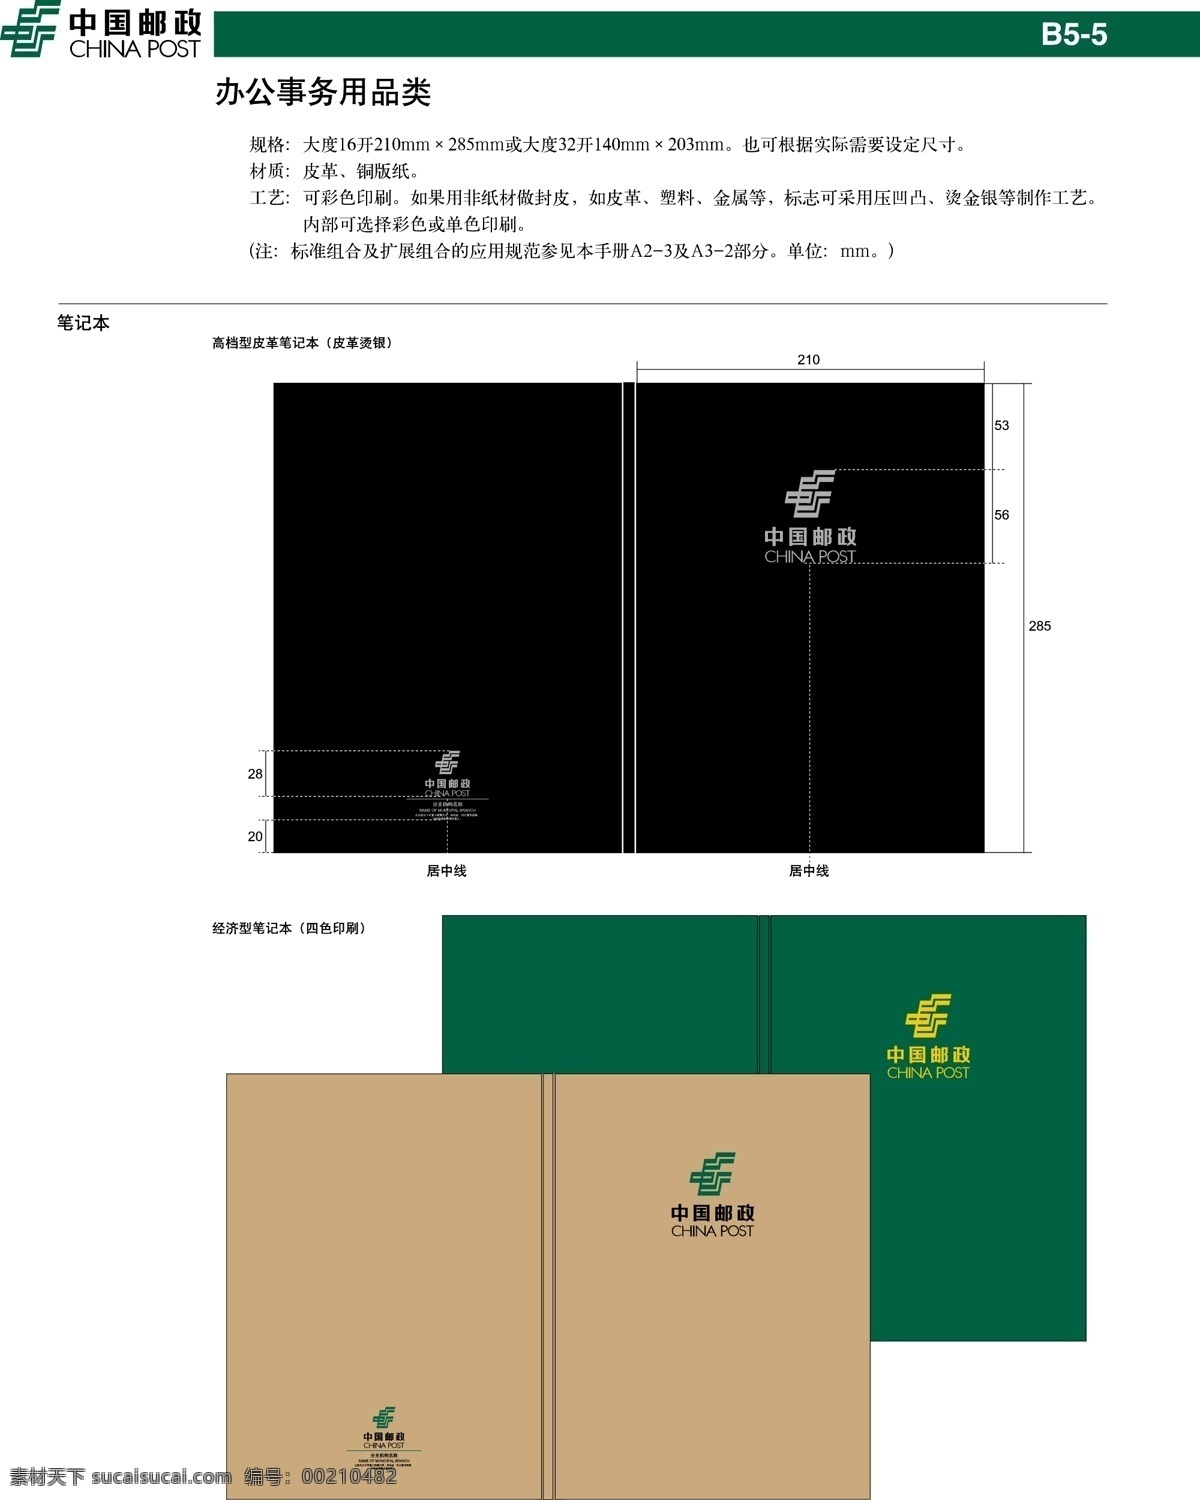 中国 邮政 笔记本 vi设计 模板 设计稿 素材元素 源文件 中国邮政 办公 事物 品类 矢量图